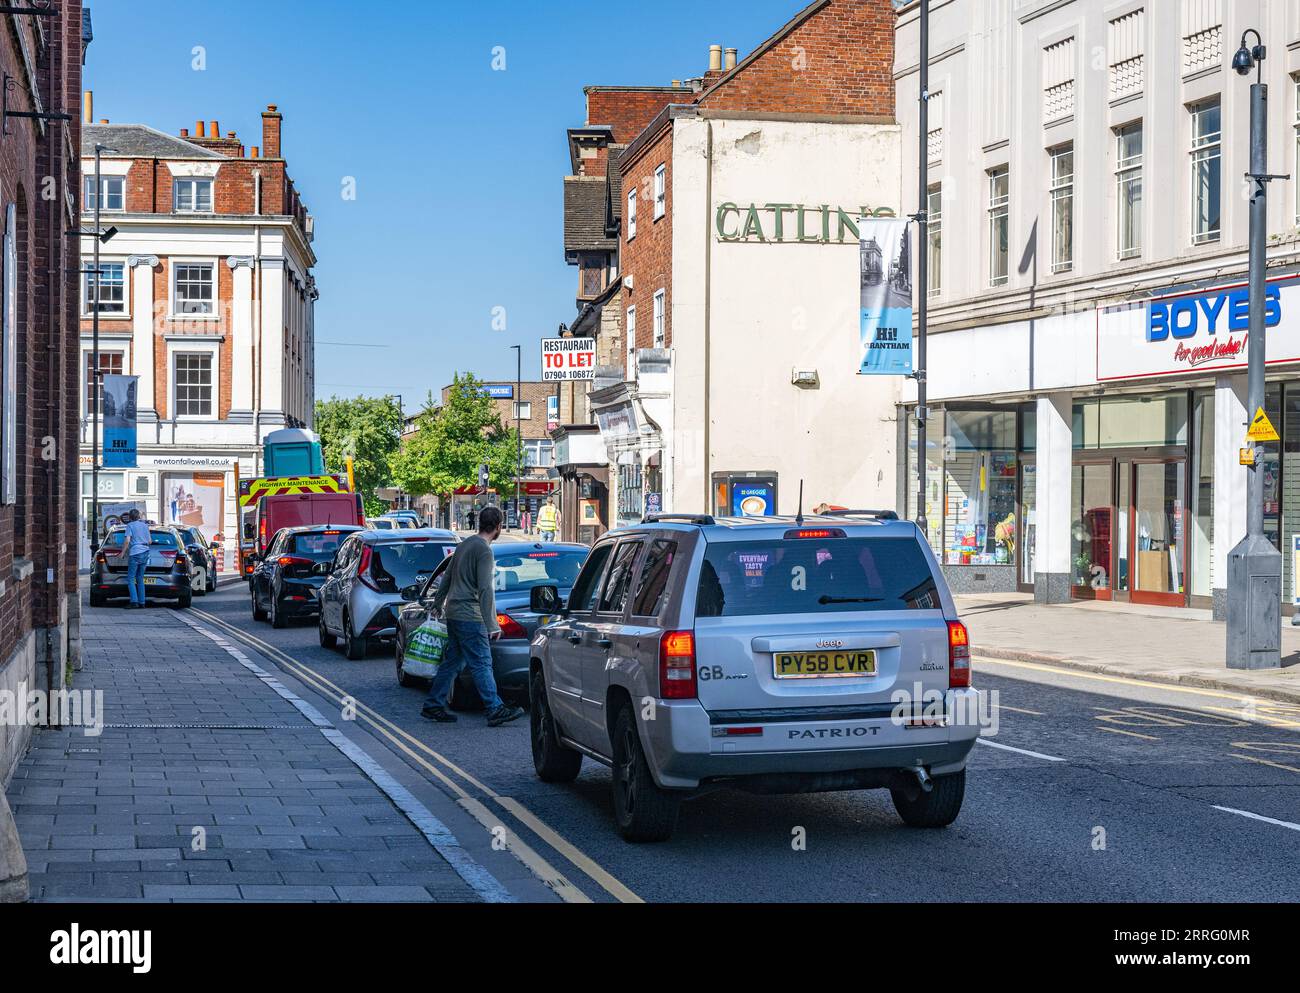 Grantham Lincolnshire – Verkehrschaos in der befahrenen engen Straße, die mit Fahrzeugen überfüllt ist Stockfoto